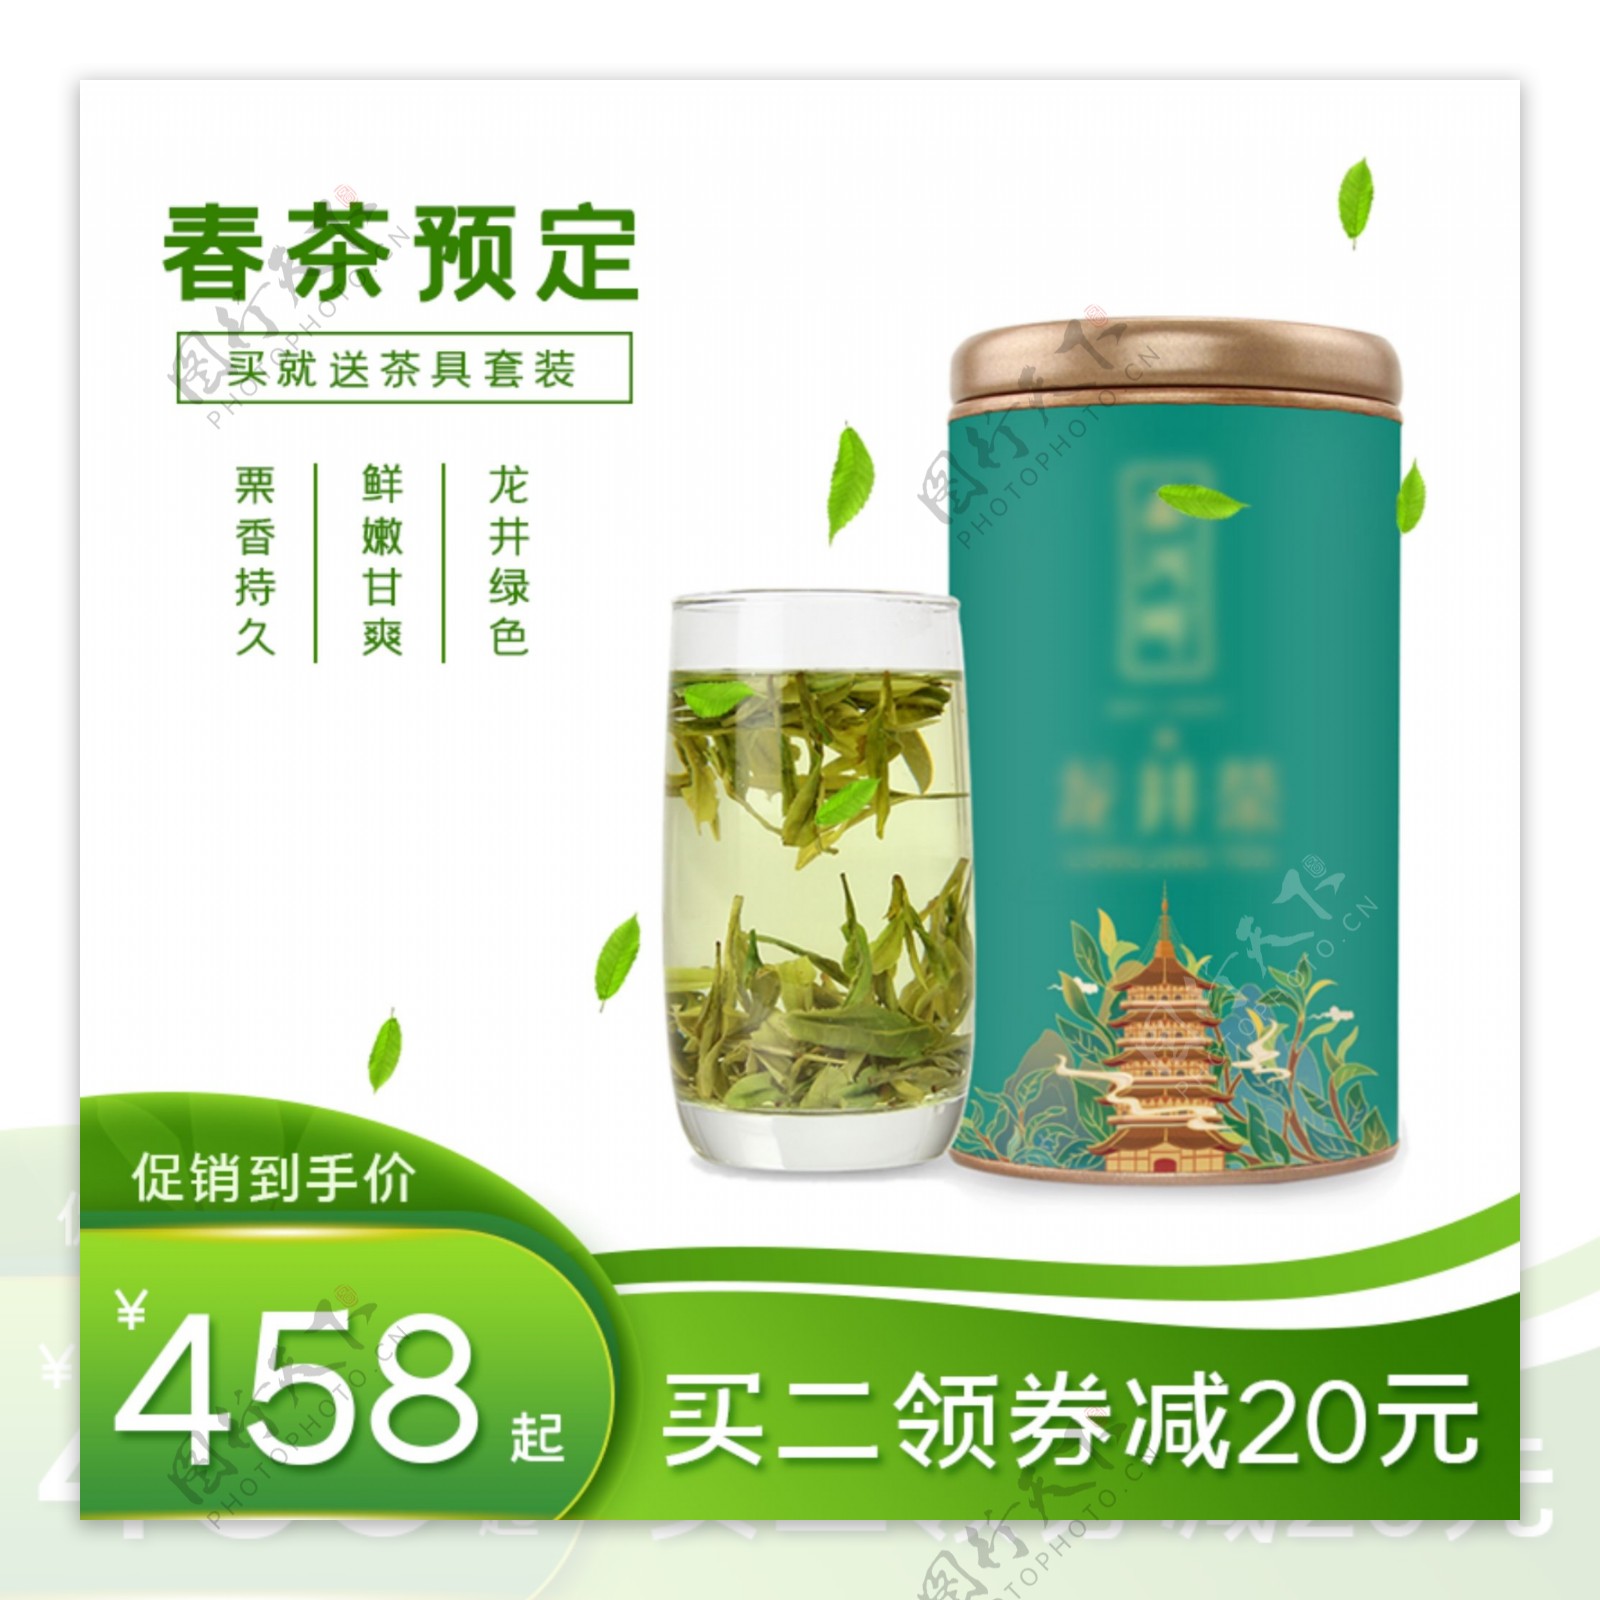 清新绿色春茶食品促销活动